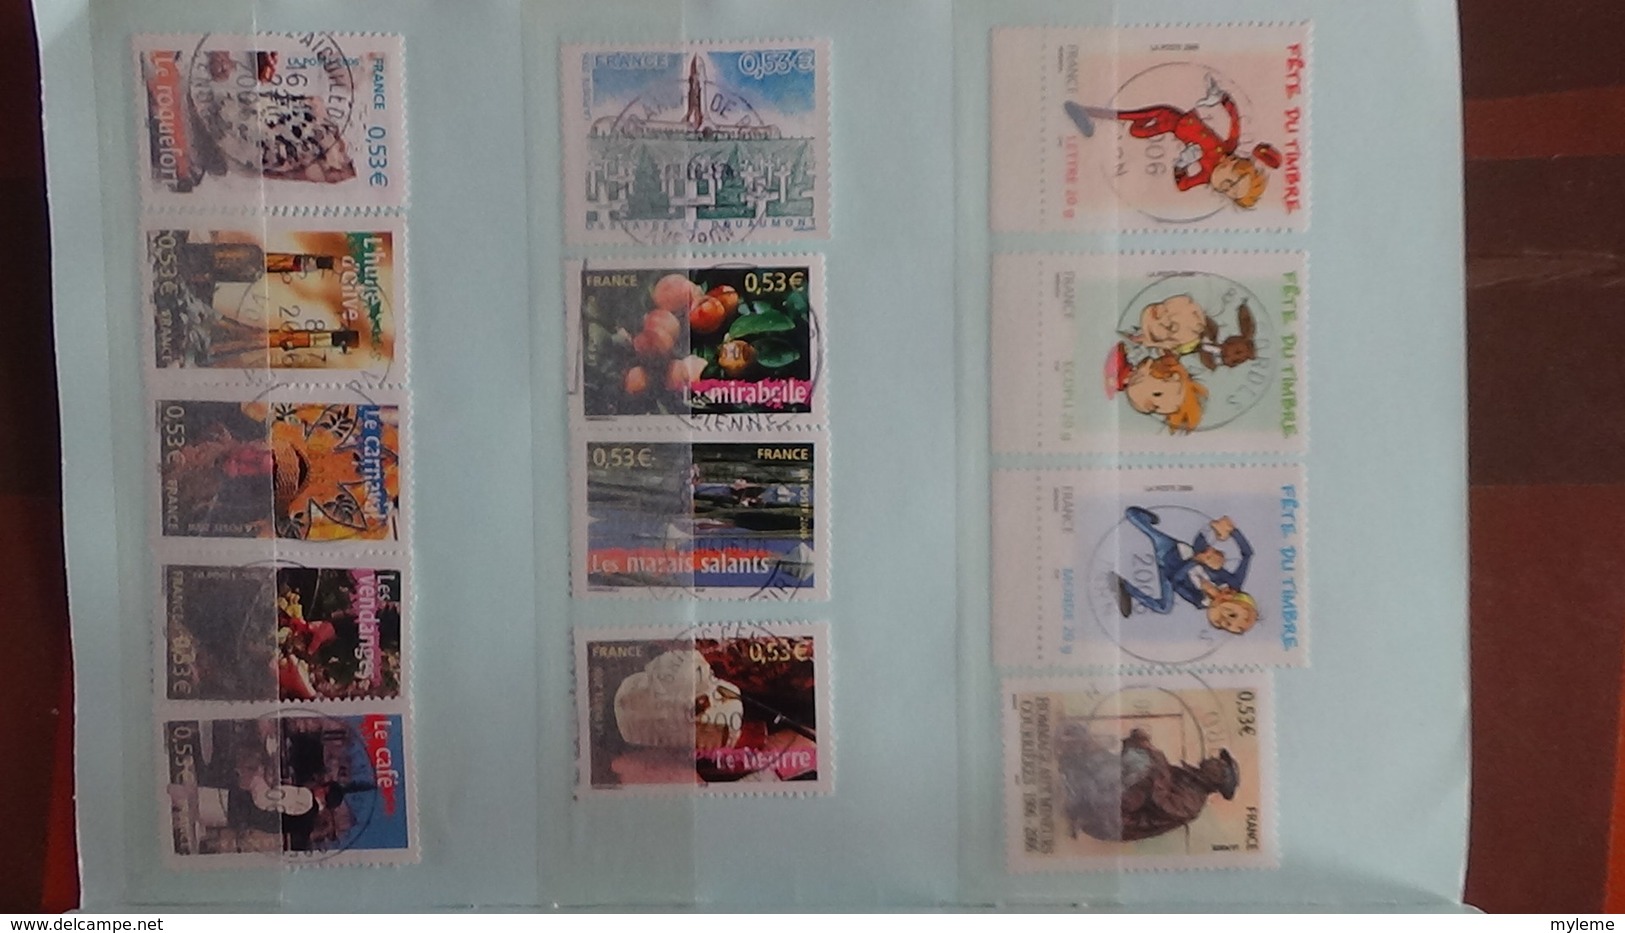 B365 Bon lot de timbres de France avec oblitérations rondes. Très sympa !!!